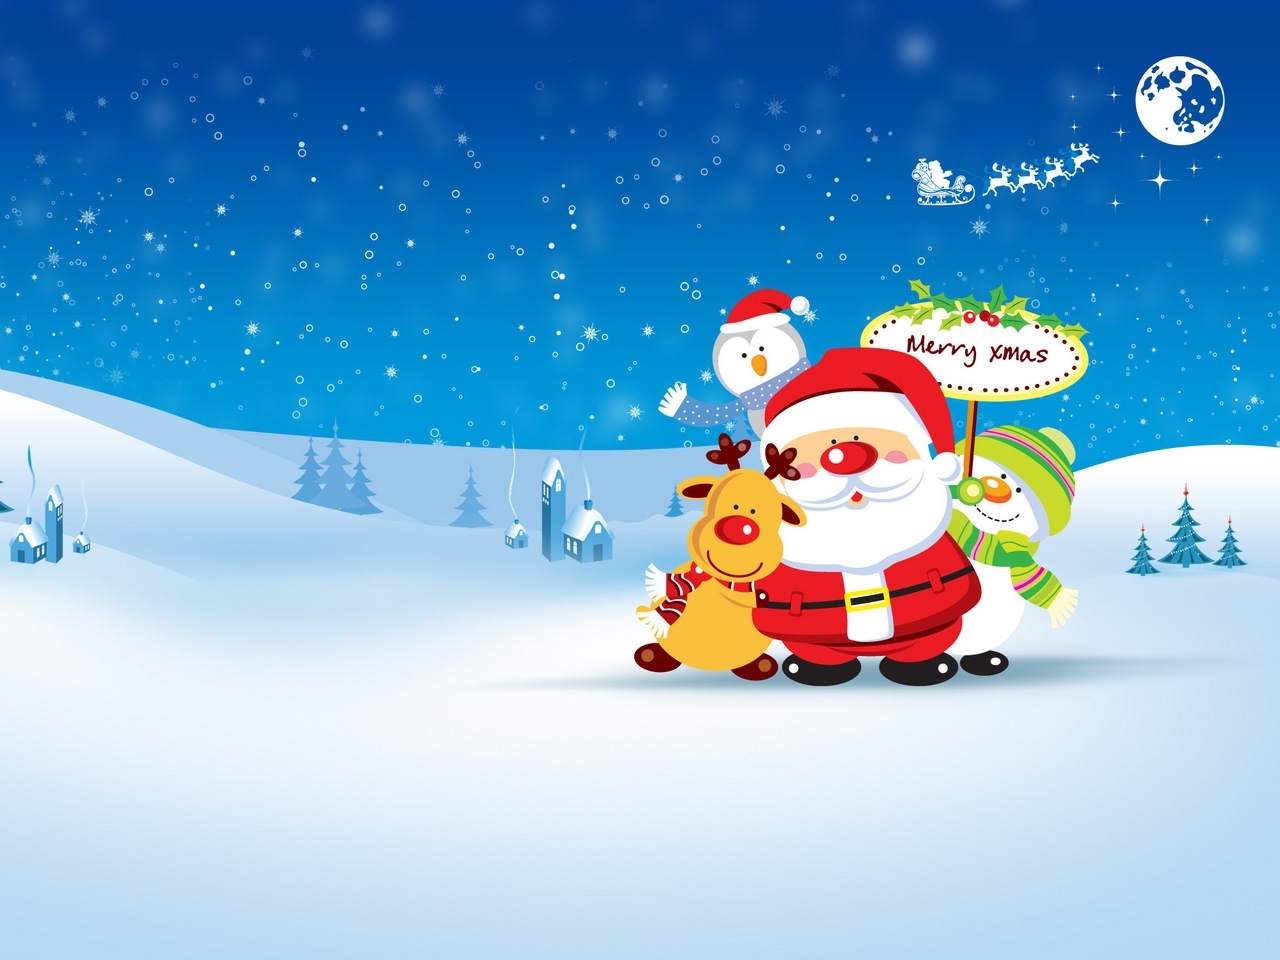 Скачать картинку Снег, Праздники, Санта Клаус (Santa Claus), Зима, Рождество (Christmas Xmas), Рисунки в телефон бесплатно.